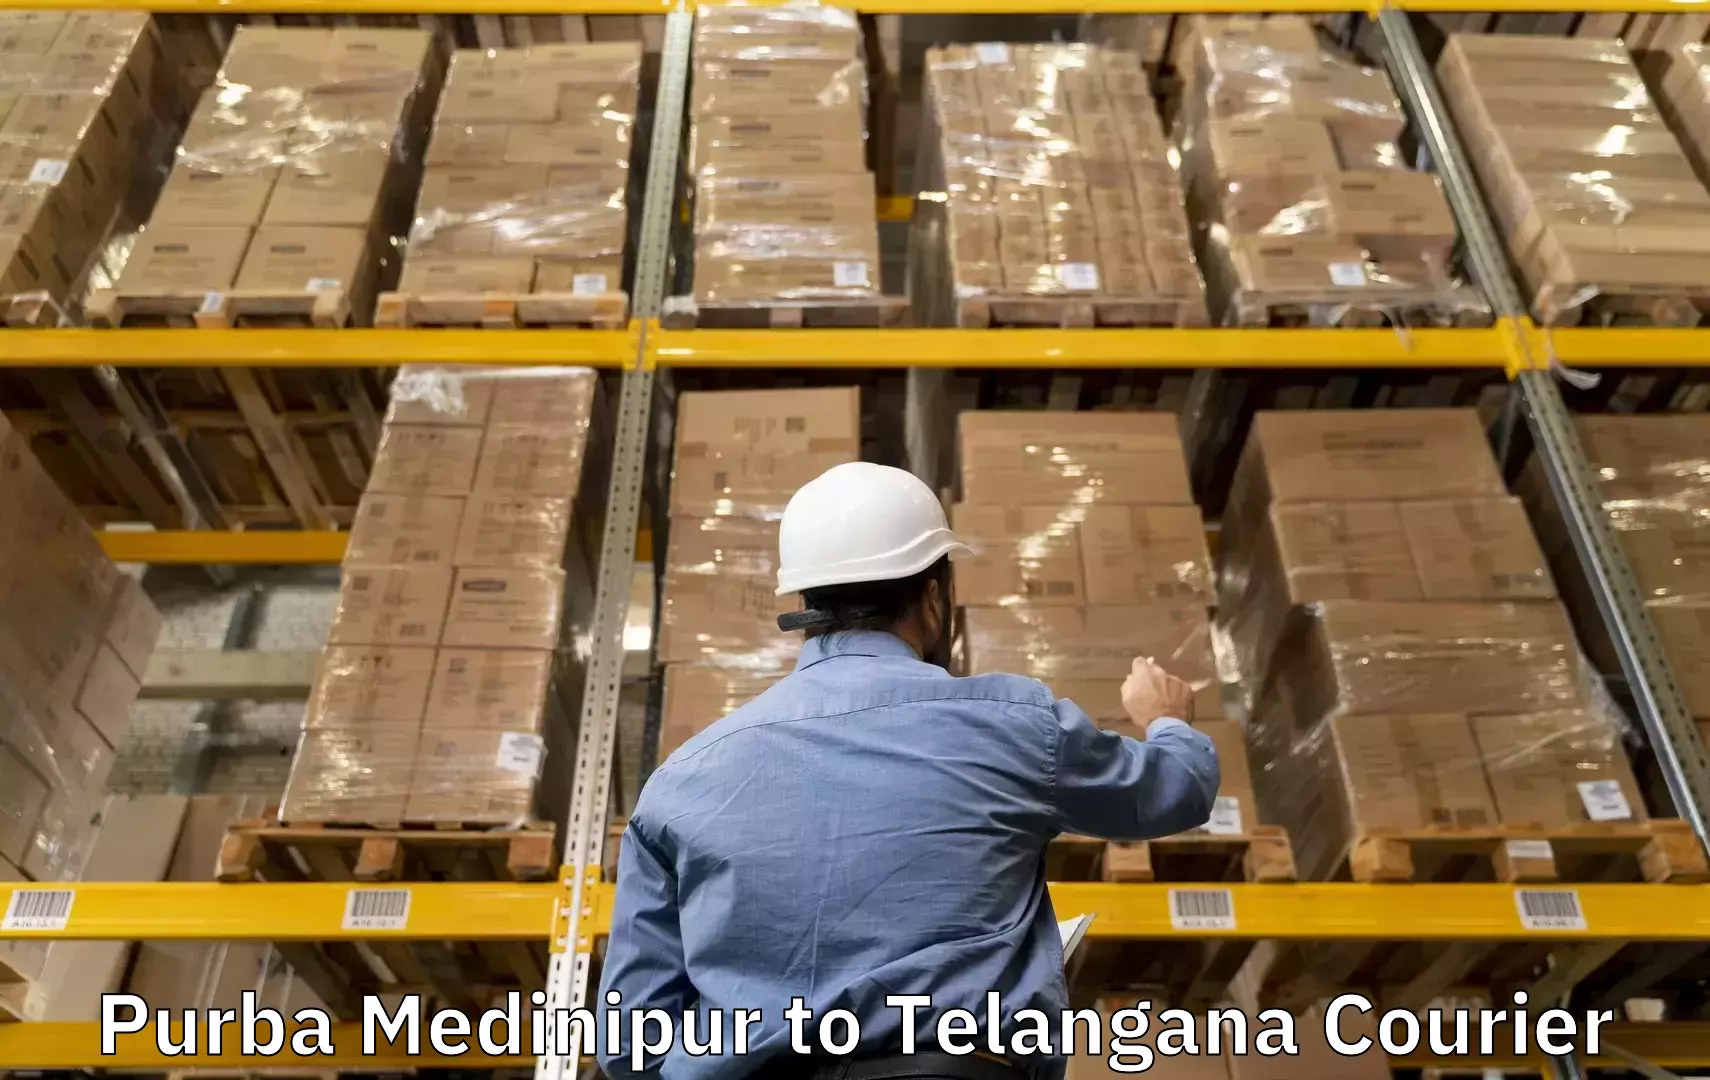 Baggage delivery estimate Purba Medinipur to Chandur